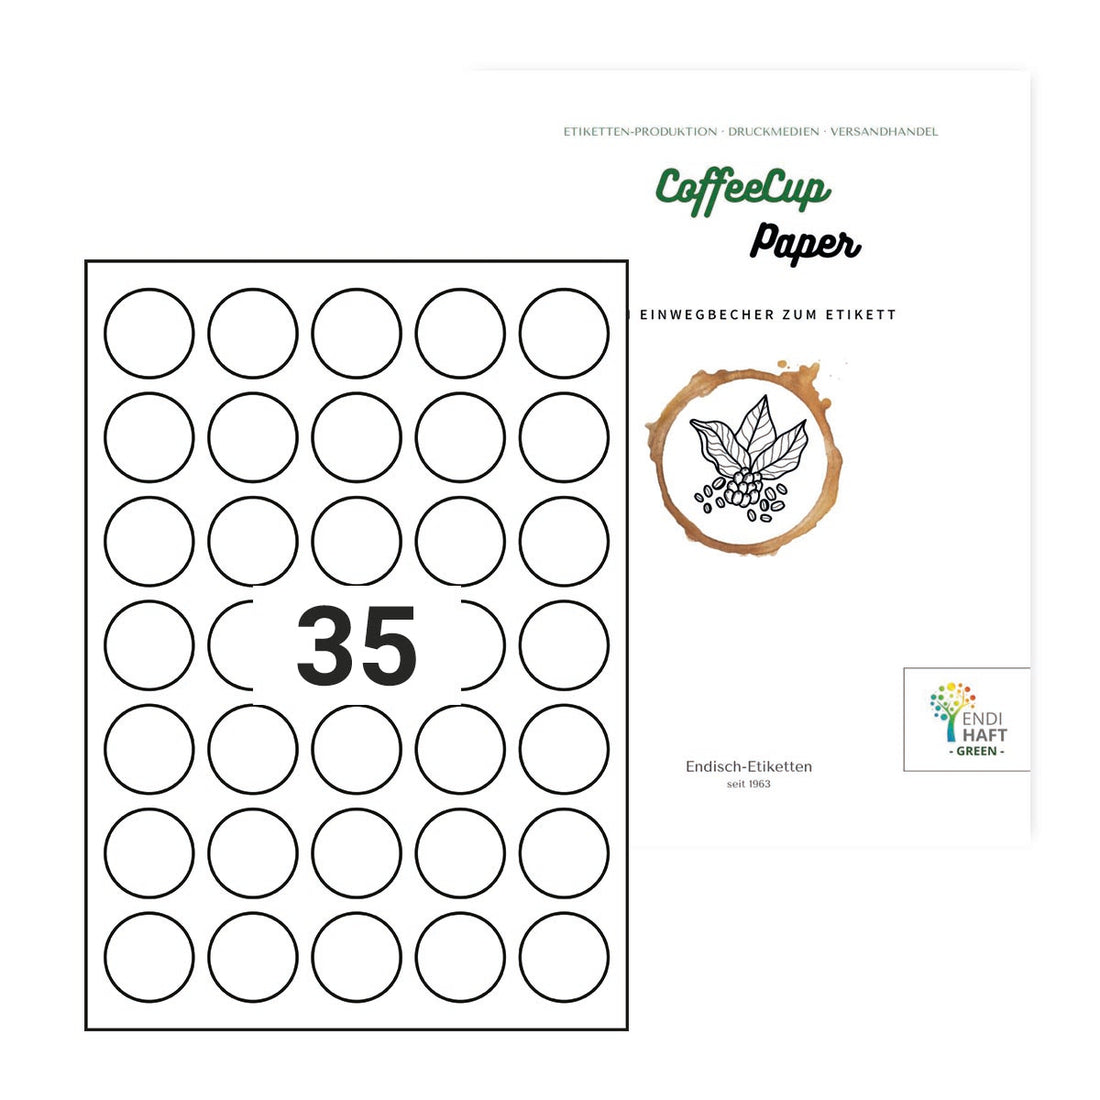 CoffeeCup Paper, 34 mm rund auf DIN A4 Bögen